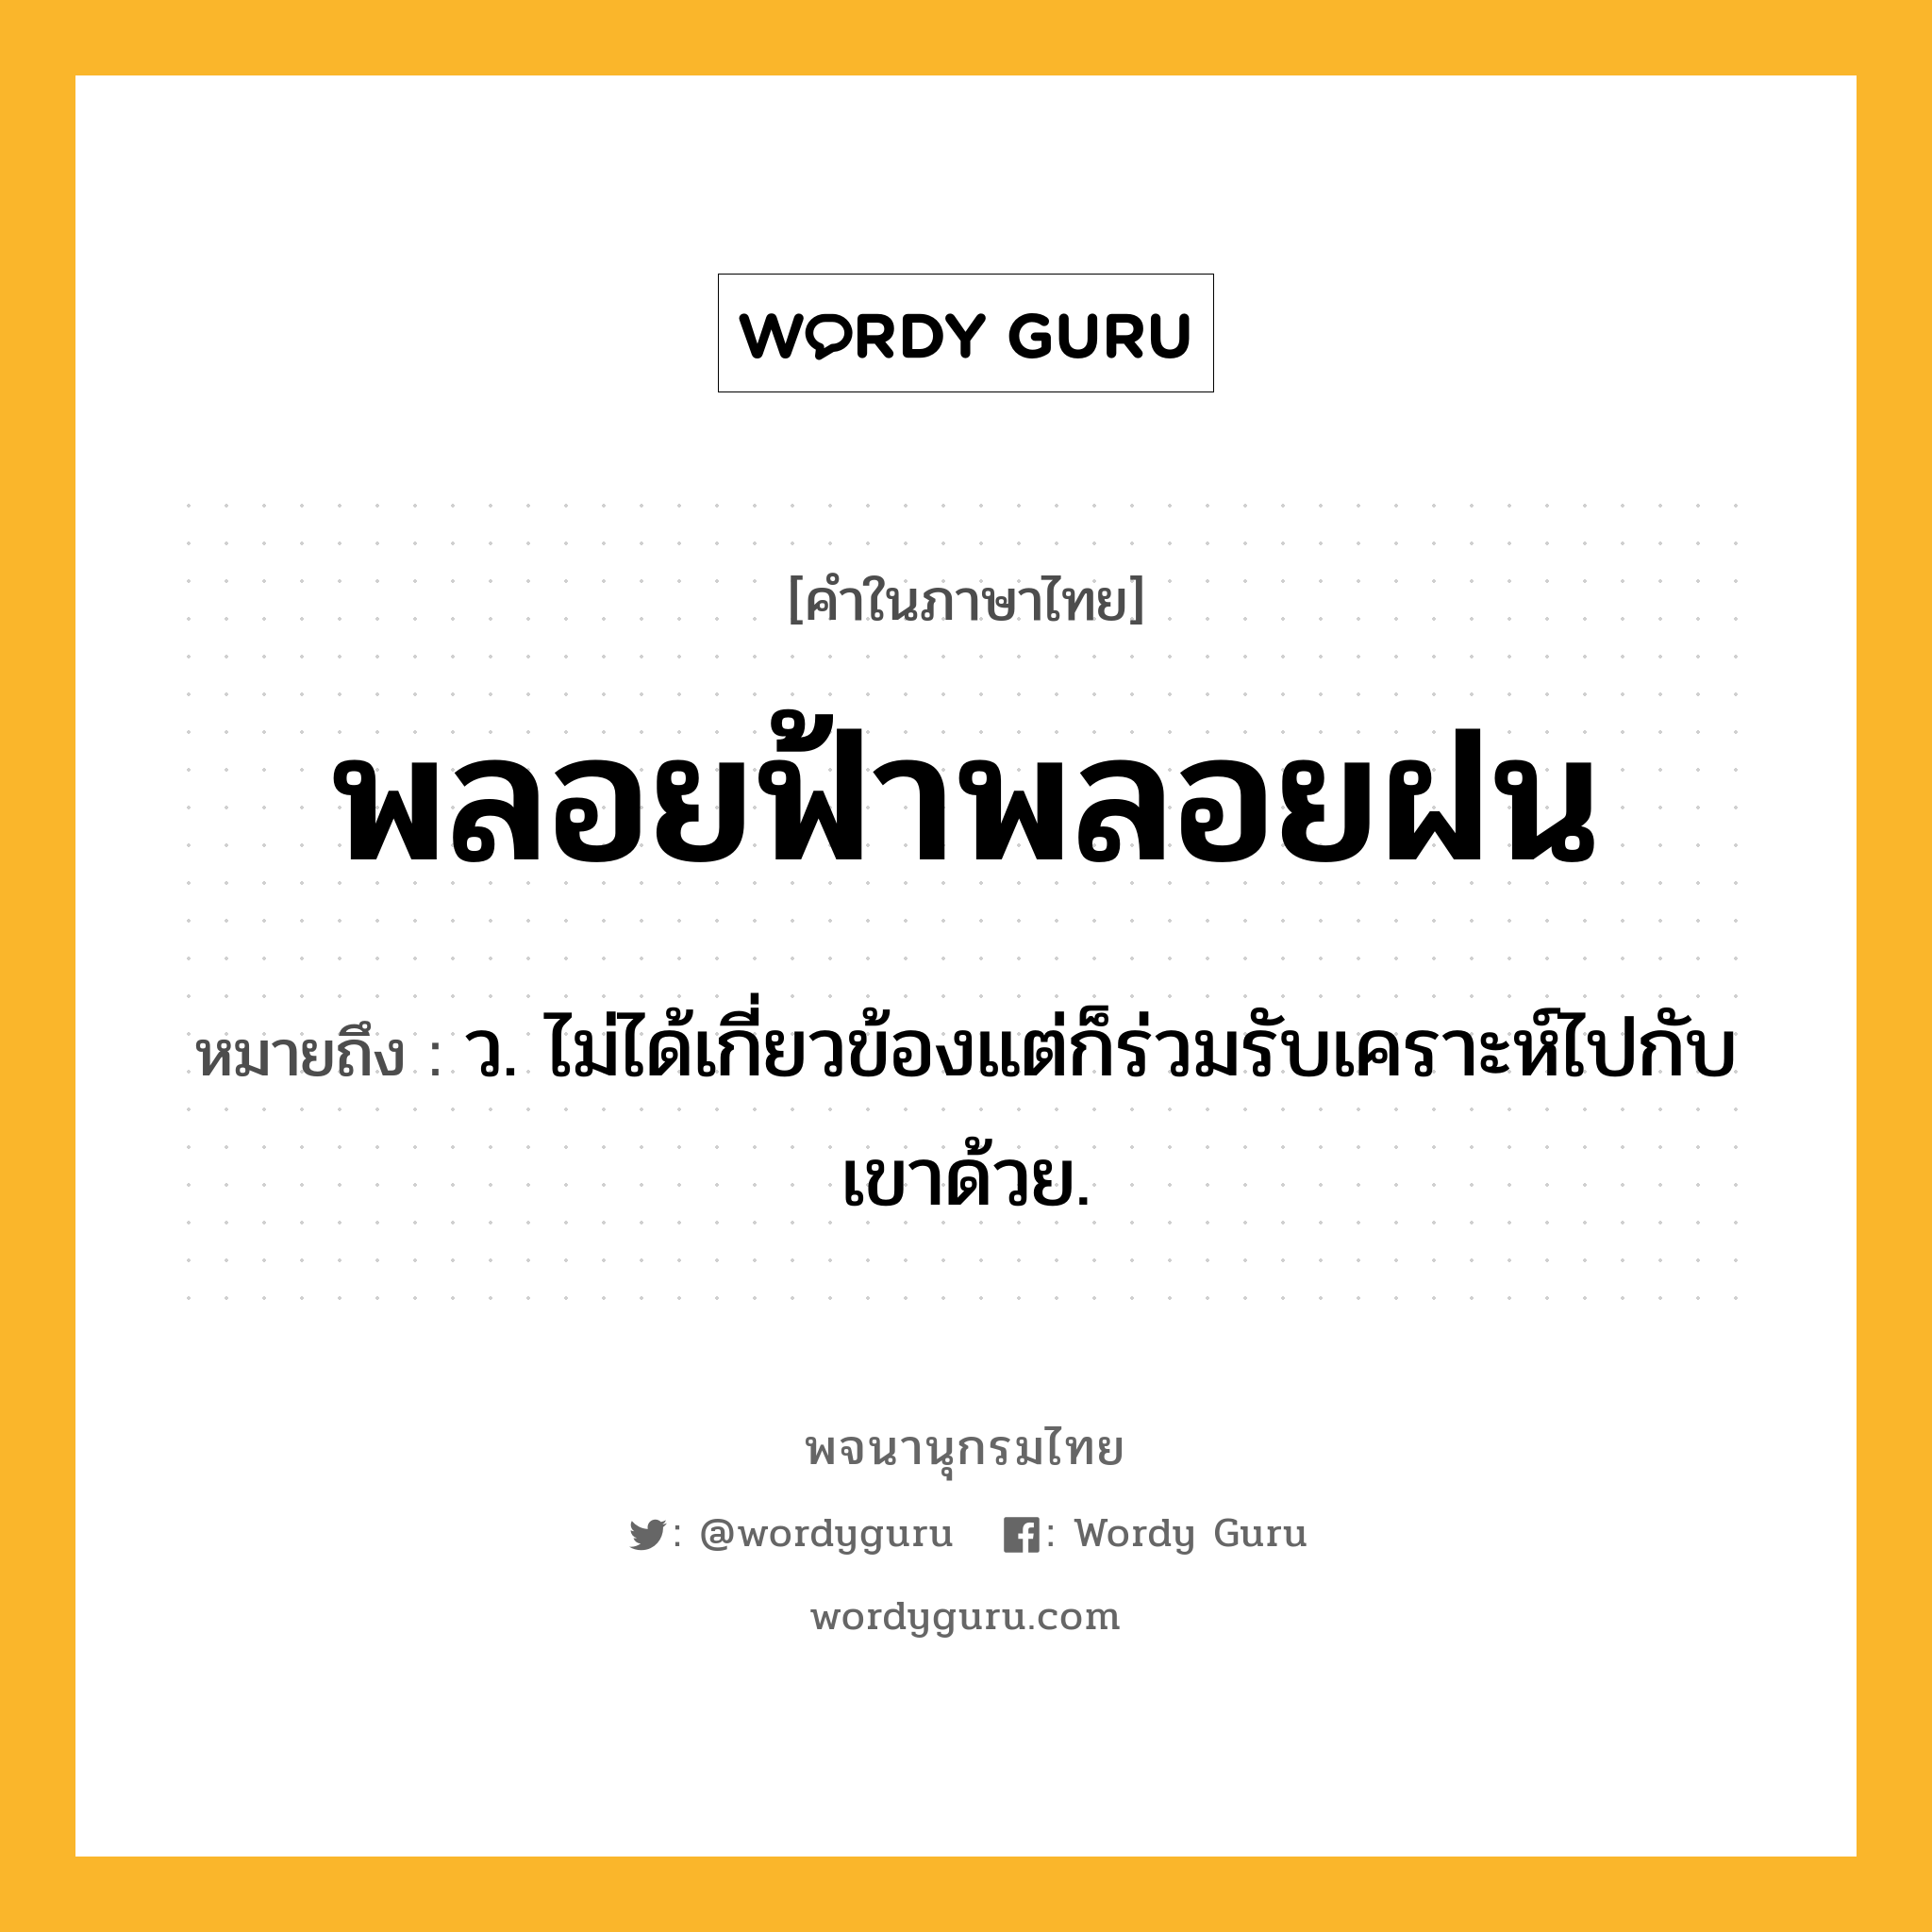 พลอยฟ้าพลอยฝน หมายถึงอะไร?, คำในภาษาไทย พลอยฟ้าพลอยฝน หมายถึง ว. ไม่ได้เกี่ยวข้องแต่ก็ร่วมรับเคราะห์ไปกับเขาด้วย.